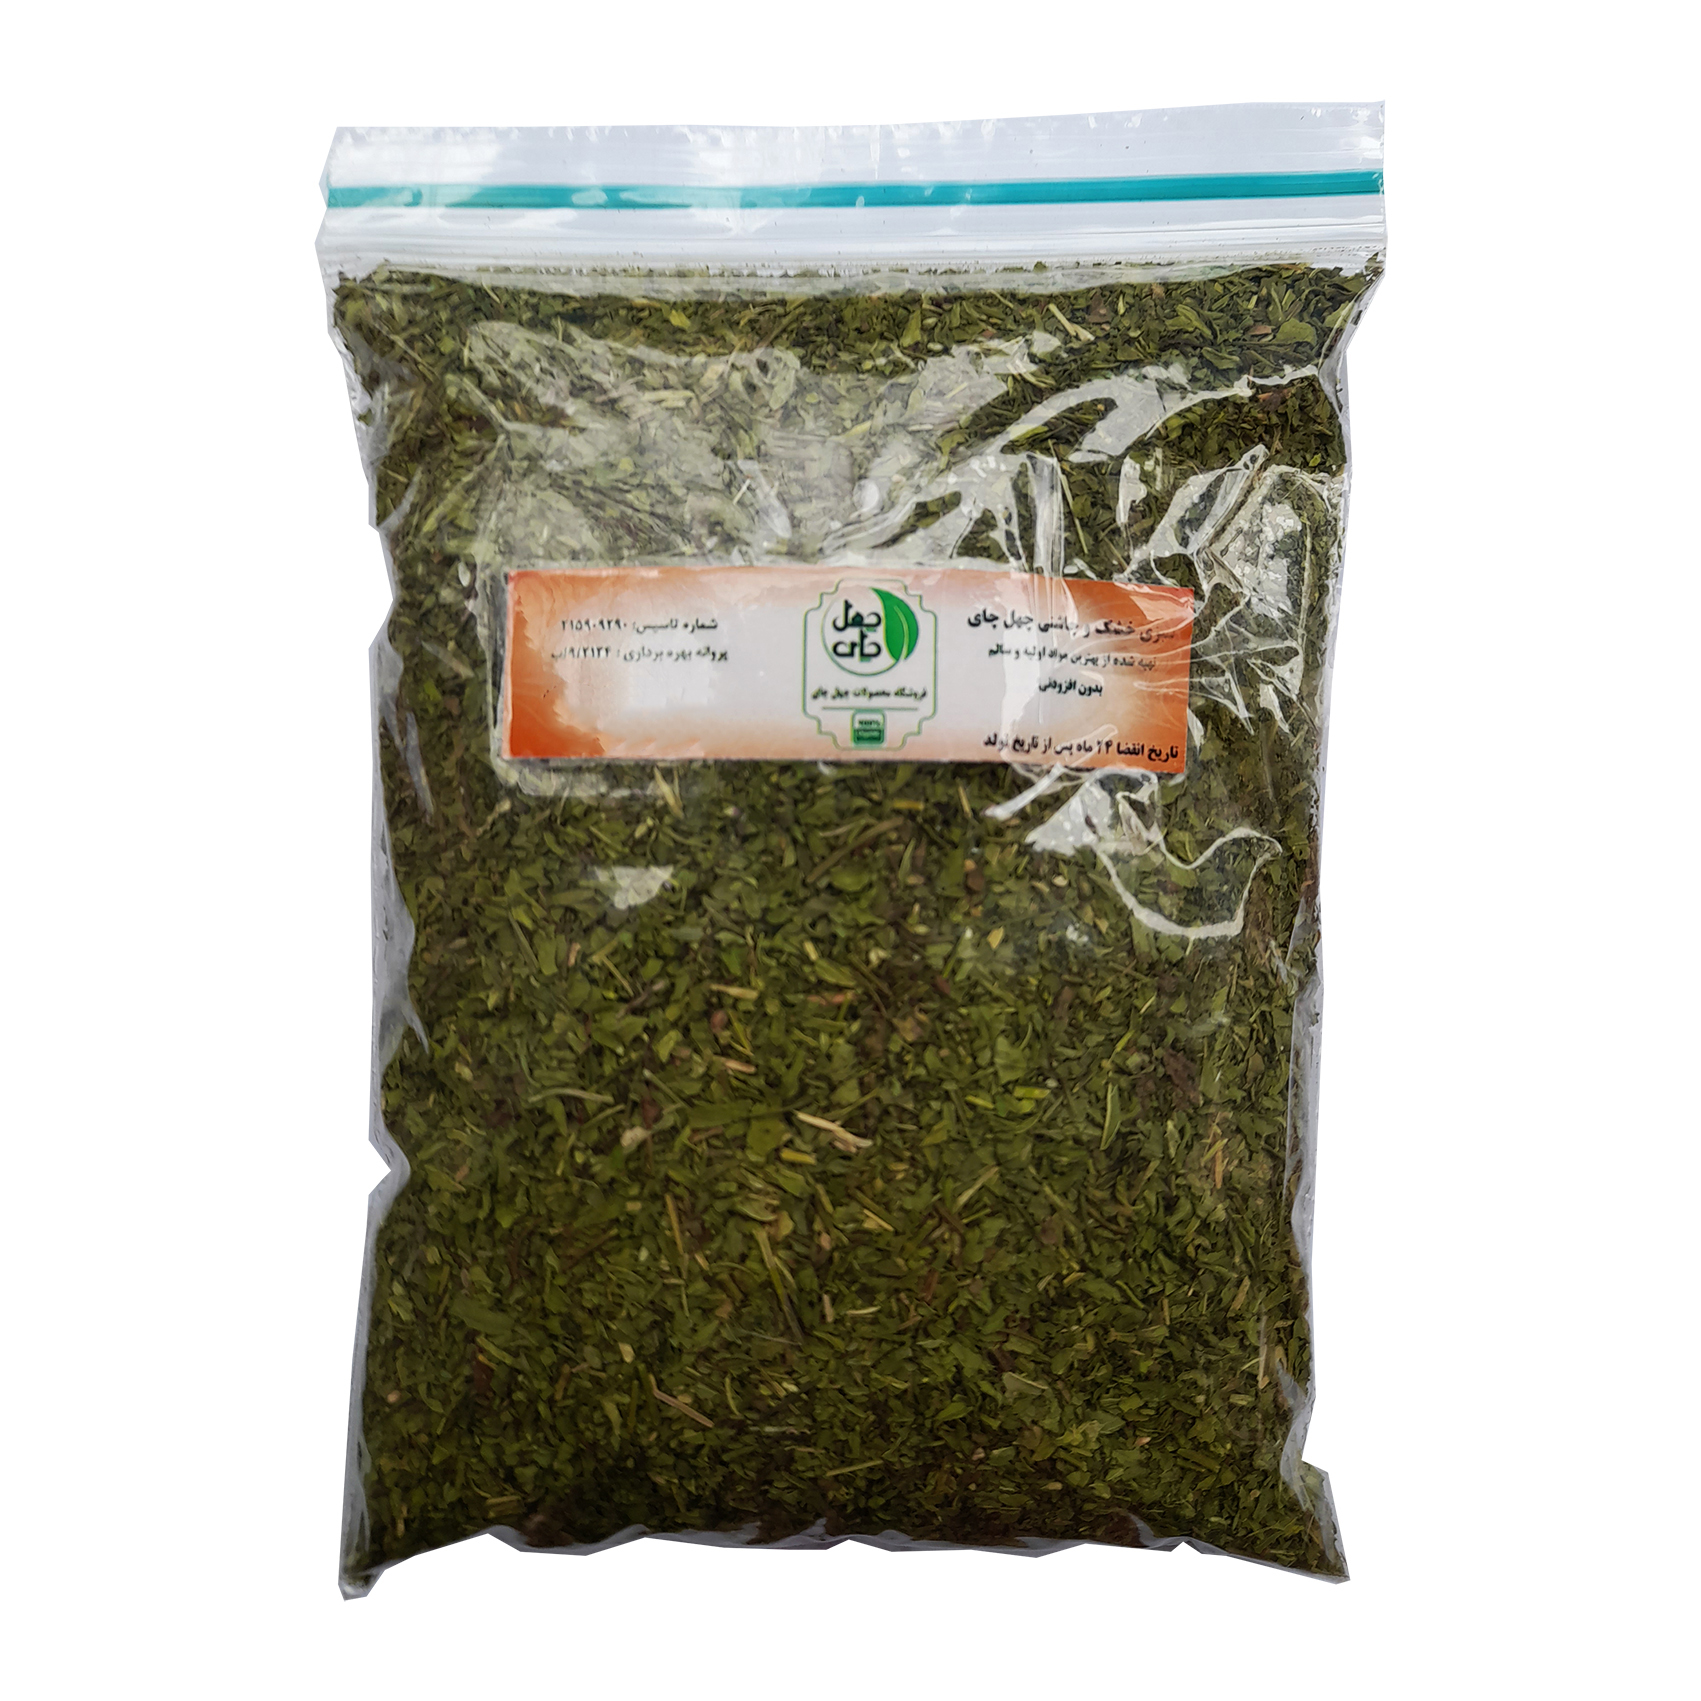 سبزی خشک نعنا چهل چای -150 گرم